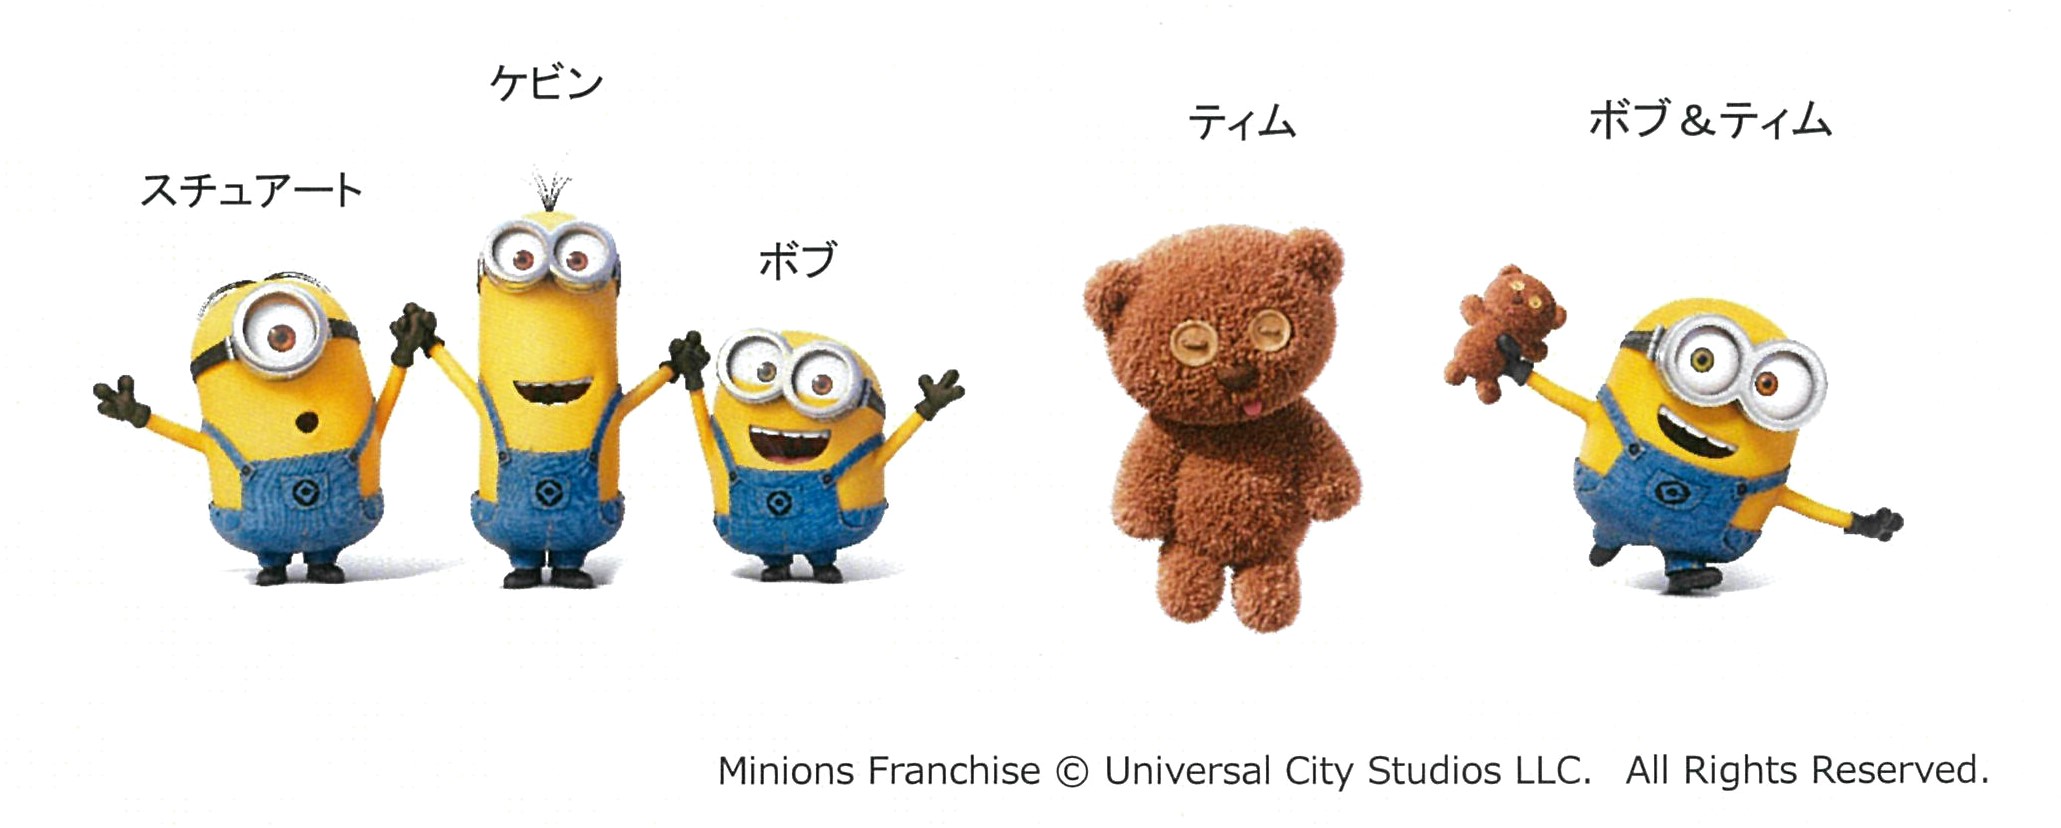 大人気キャラクター ミニオン とのコラボ商品が 3商品同時発売 プレスリリース 三菱鉛筆株式会社